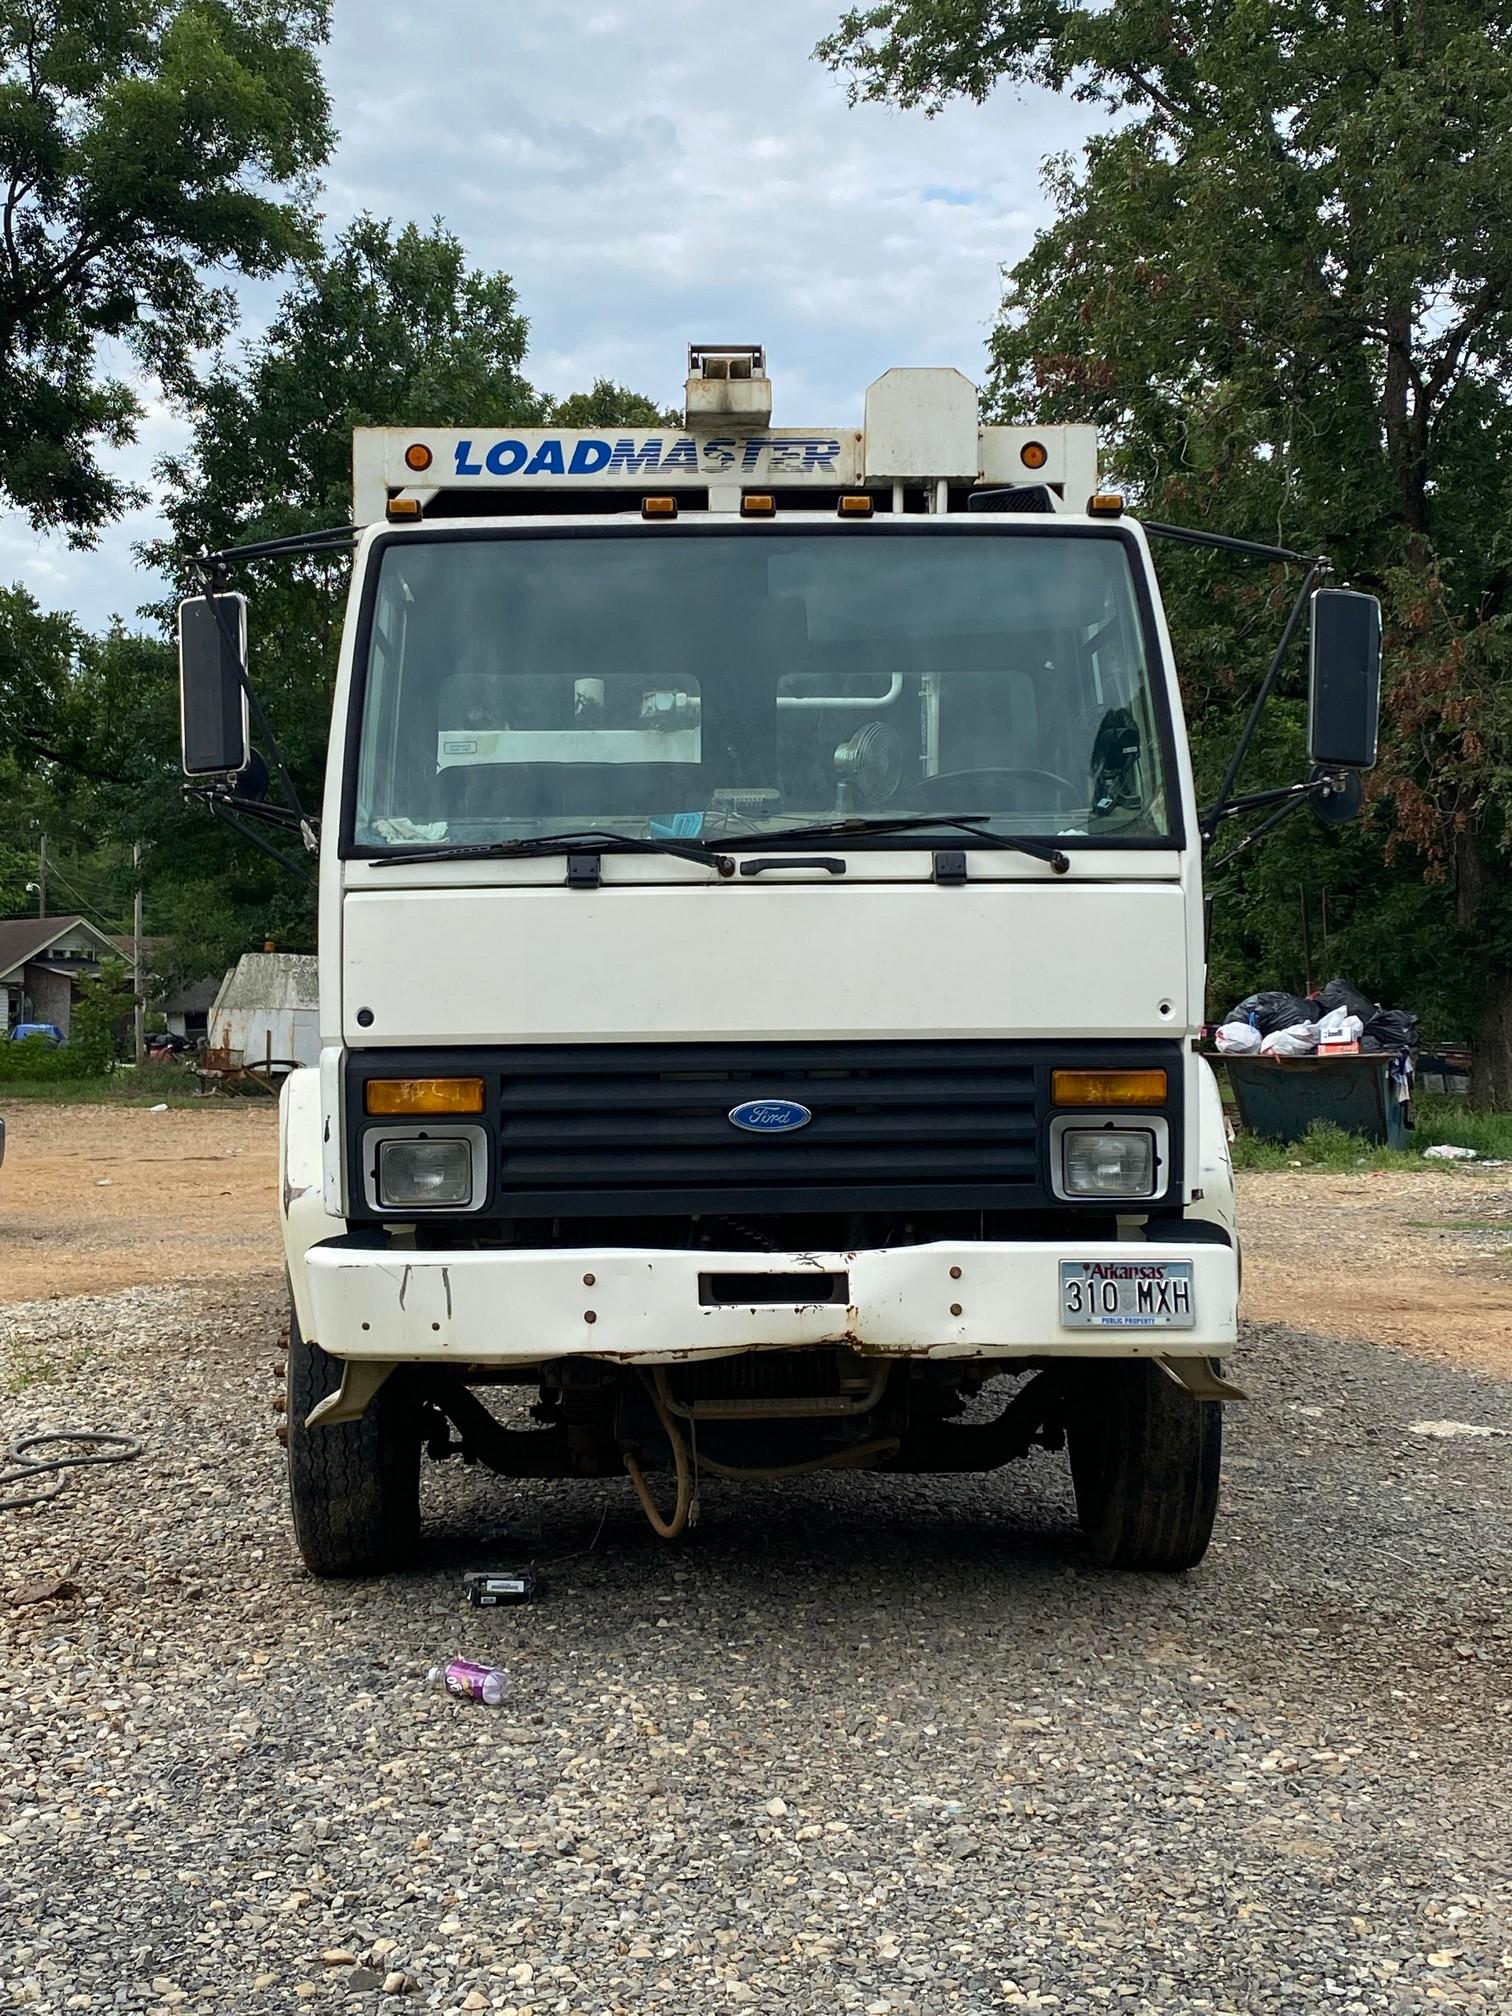 1996 Ford Trash truck